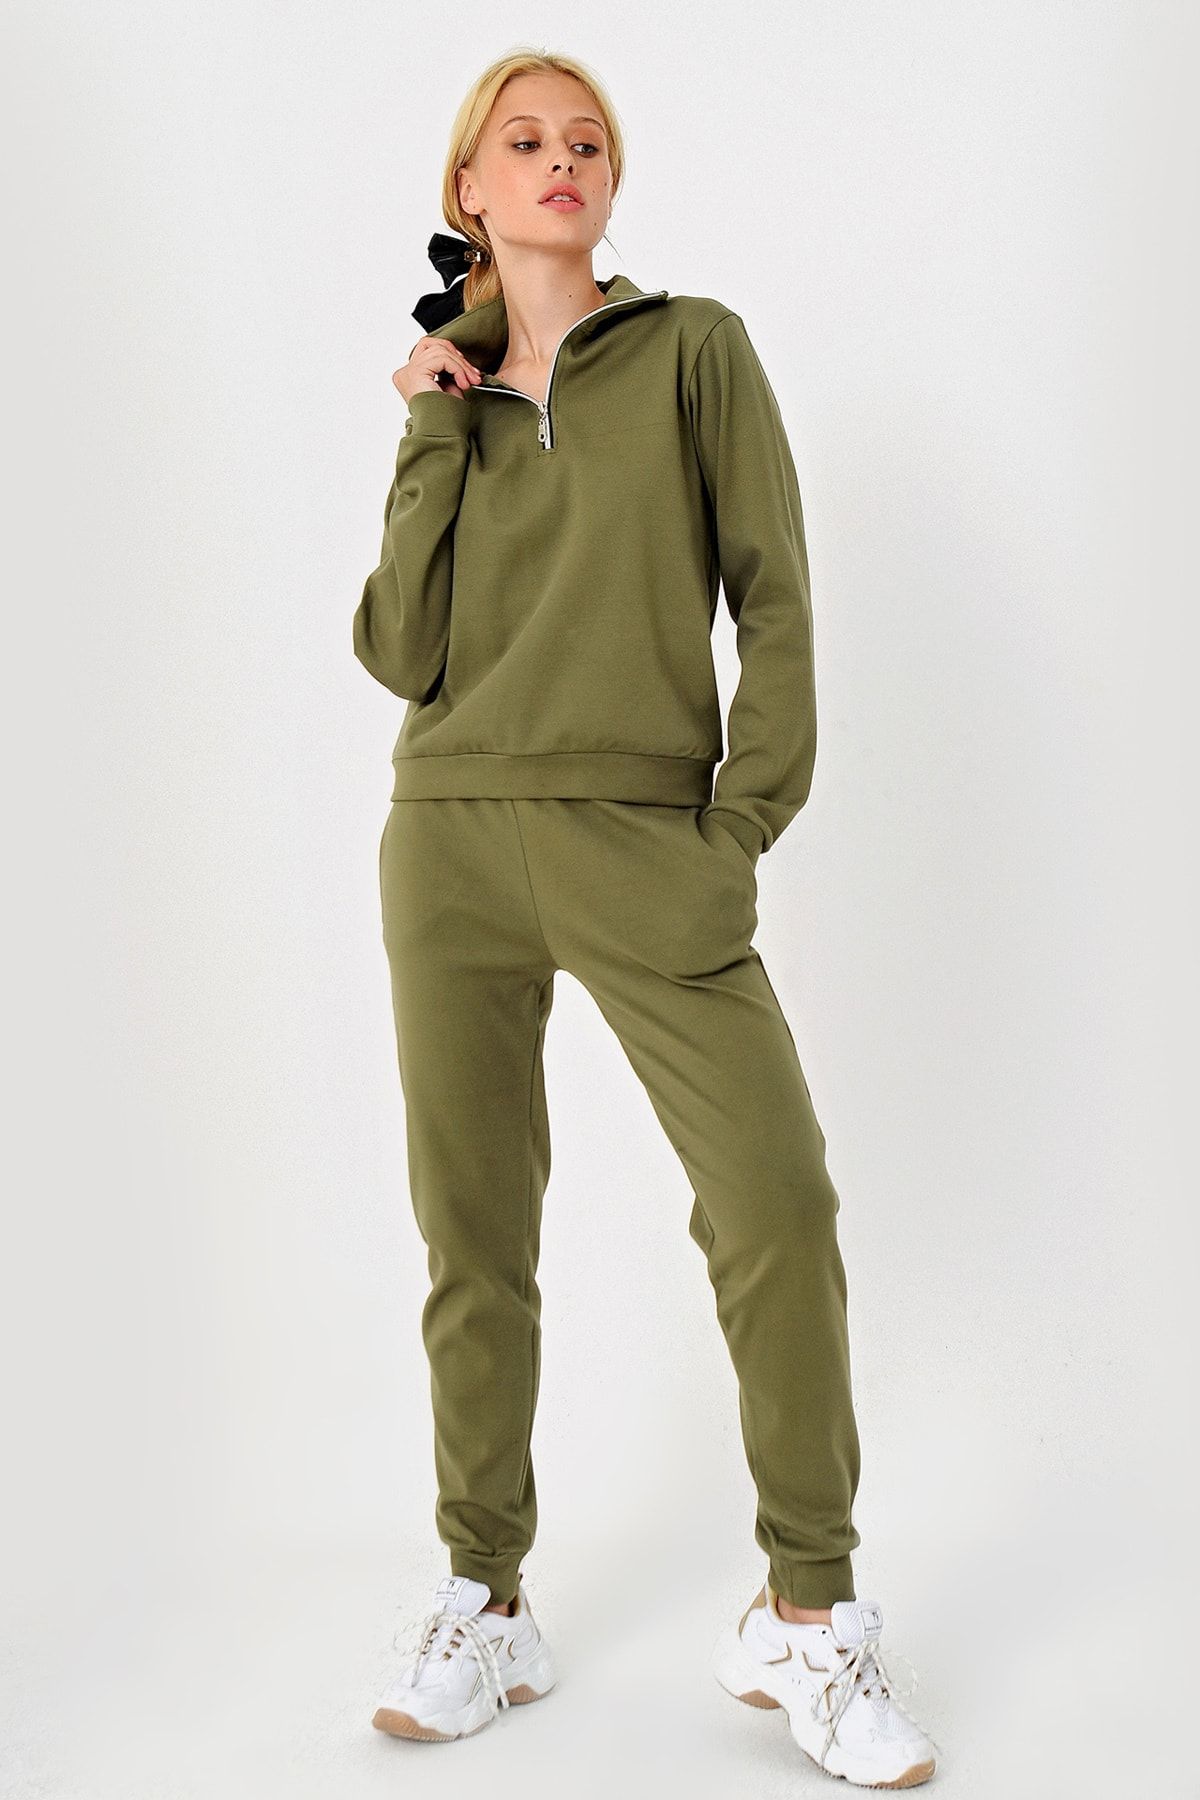 Trend Alaçatı Stili Kadın Haki Fermuarlı Dik Yaka Eşofman Takımı ALC-X4800